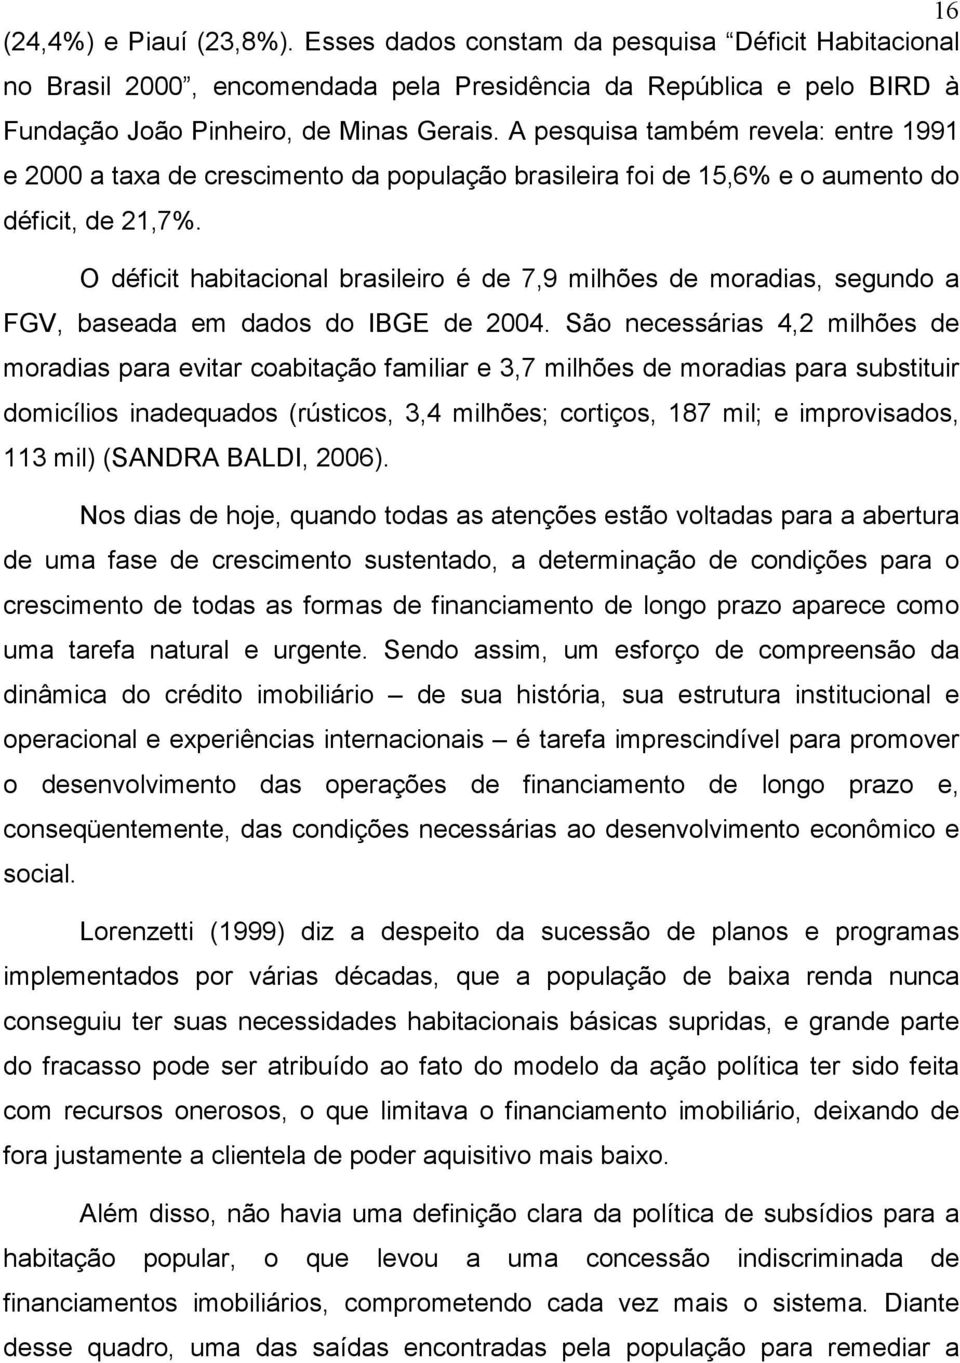 O déficit habitacional brasileiro é de 7,9 milhões de moradias, segundo a FGV, baseada em dados do IBGE de 2004.